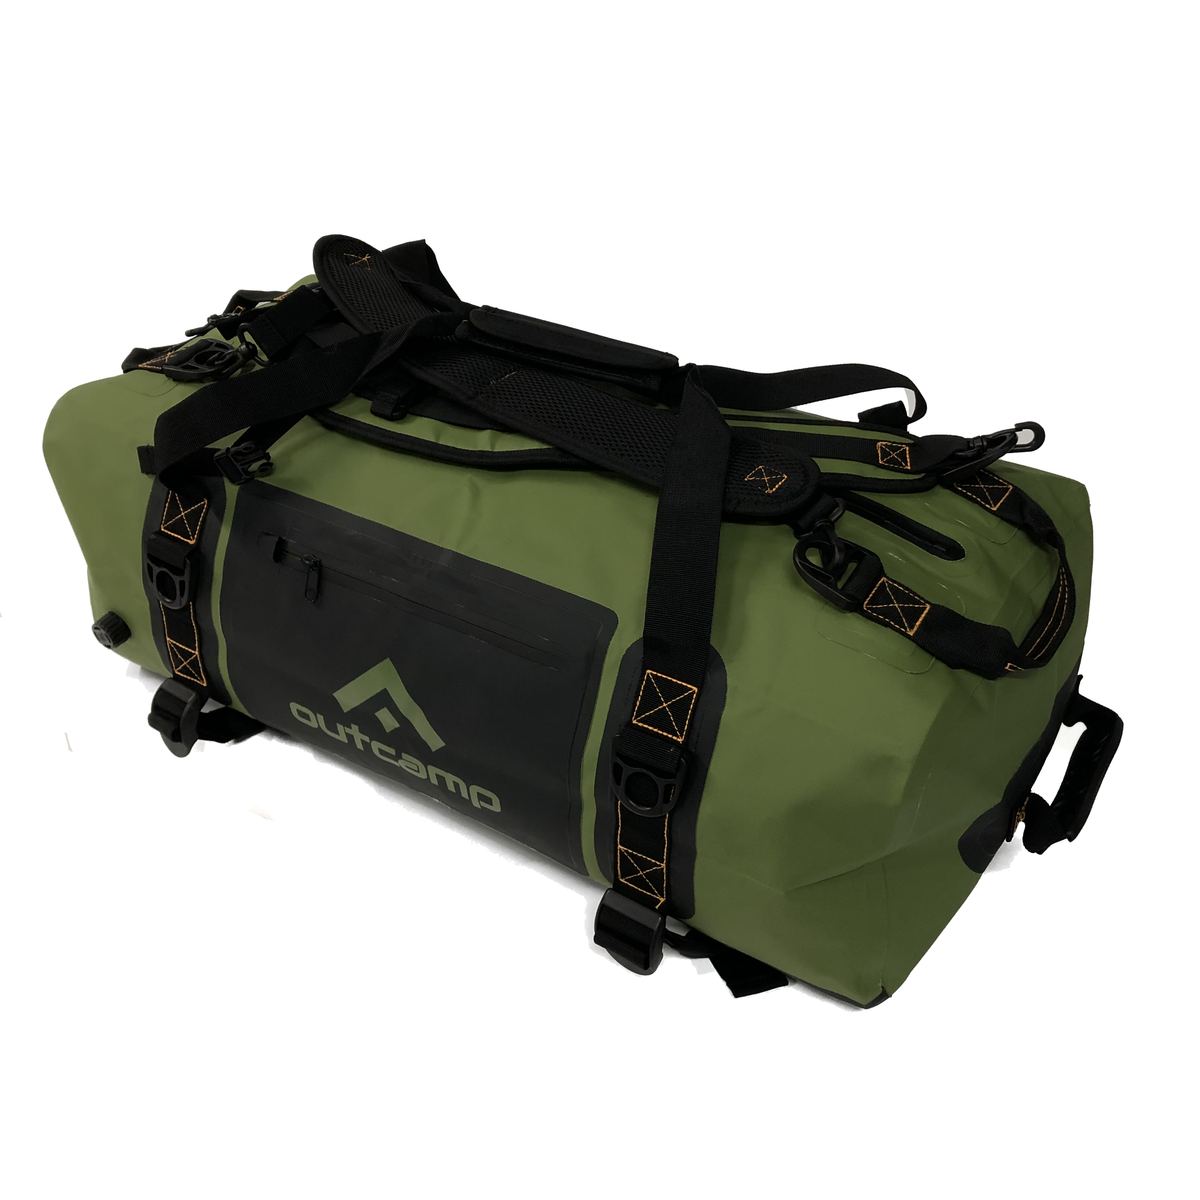 Waterproof duffel bag / backpack